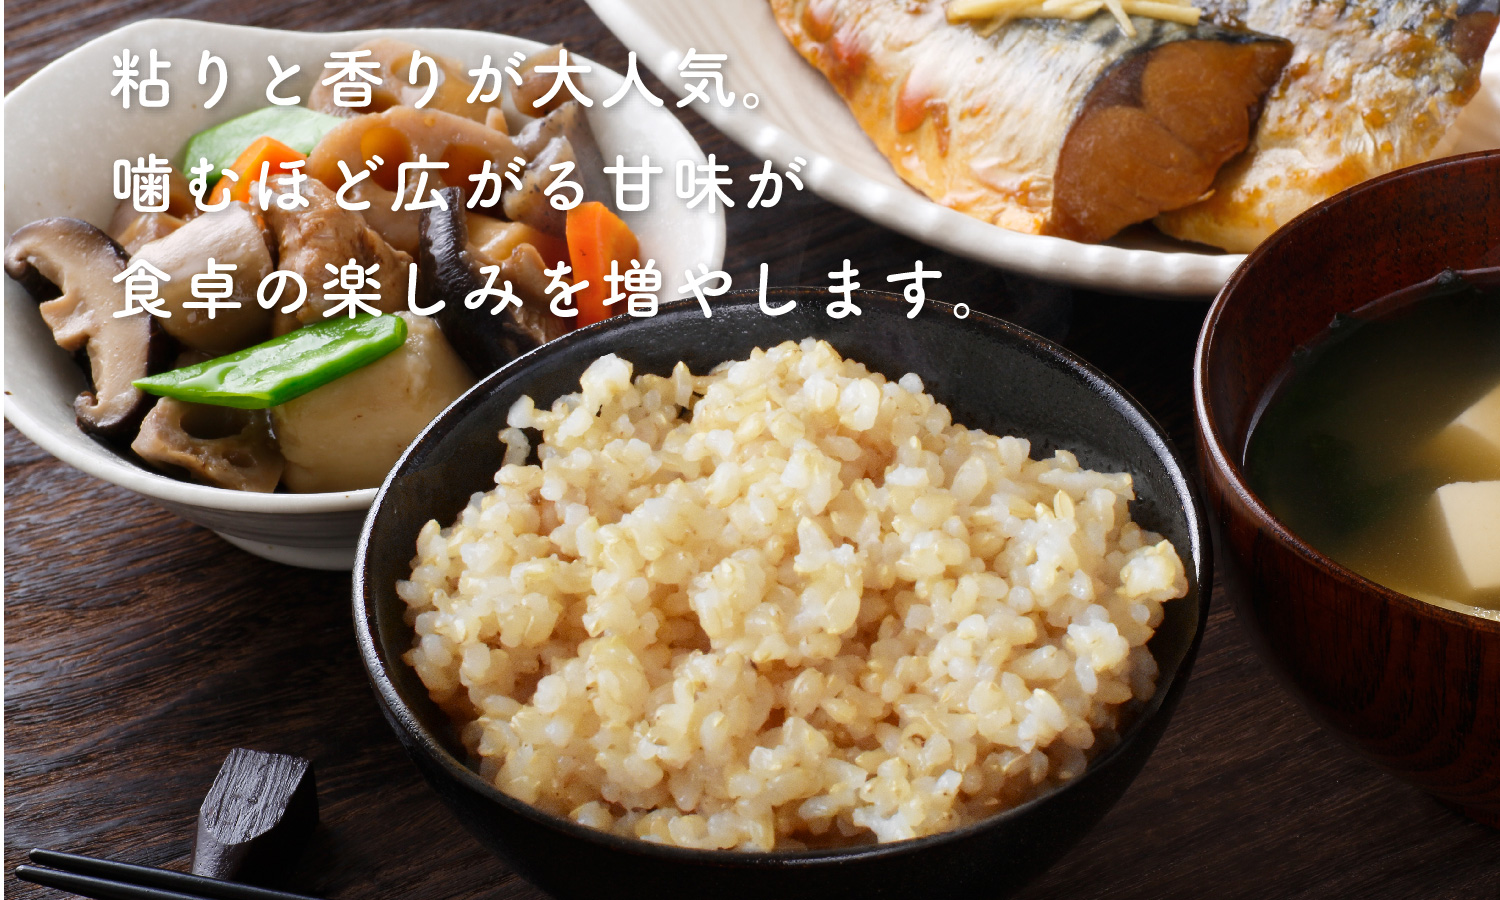 高柳さんのコシヒカリ玄米